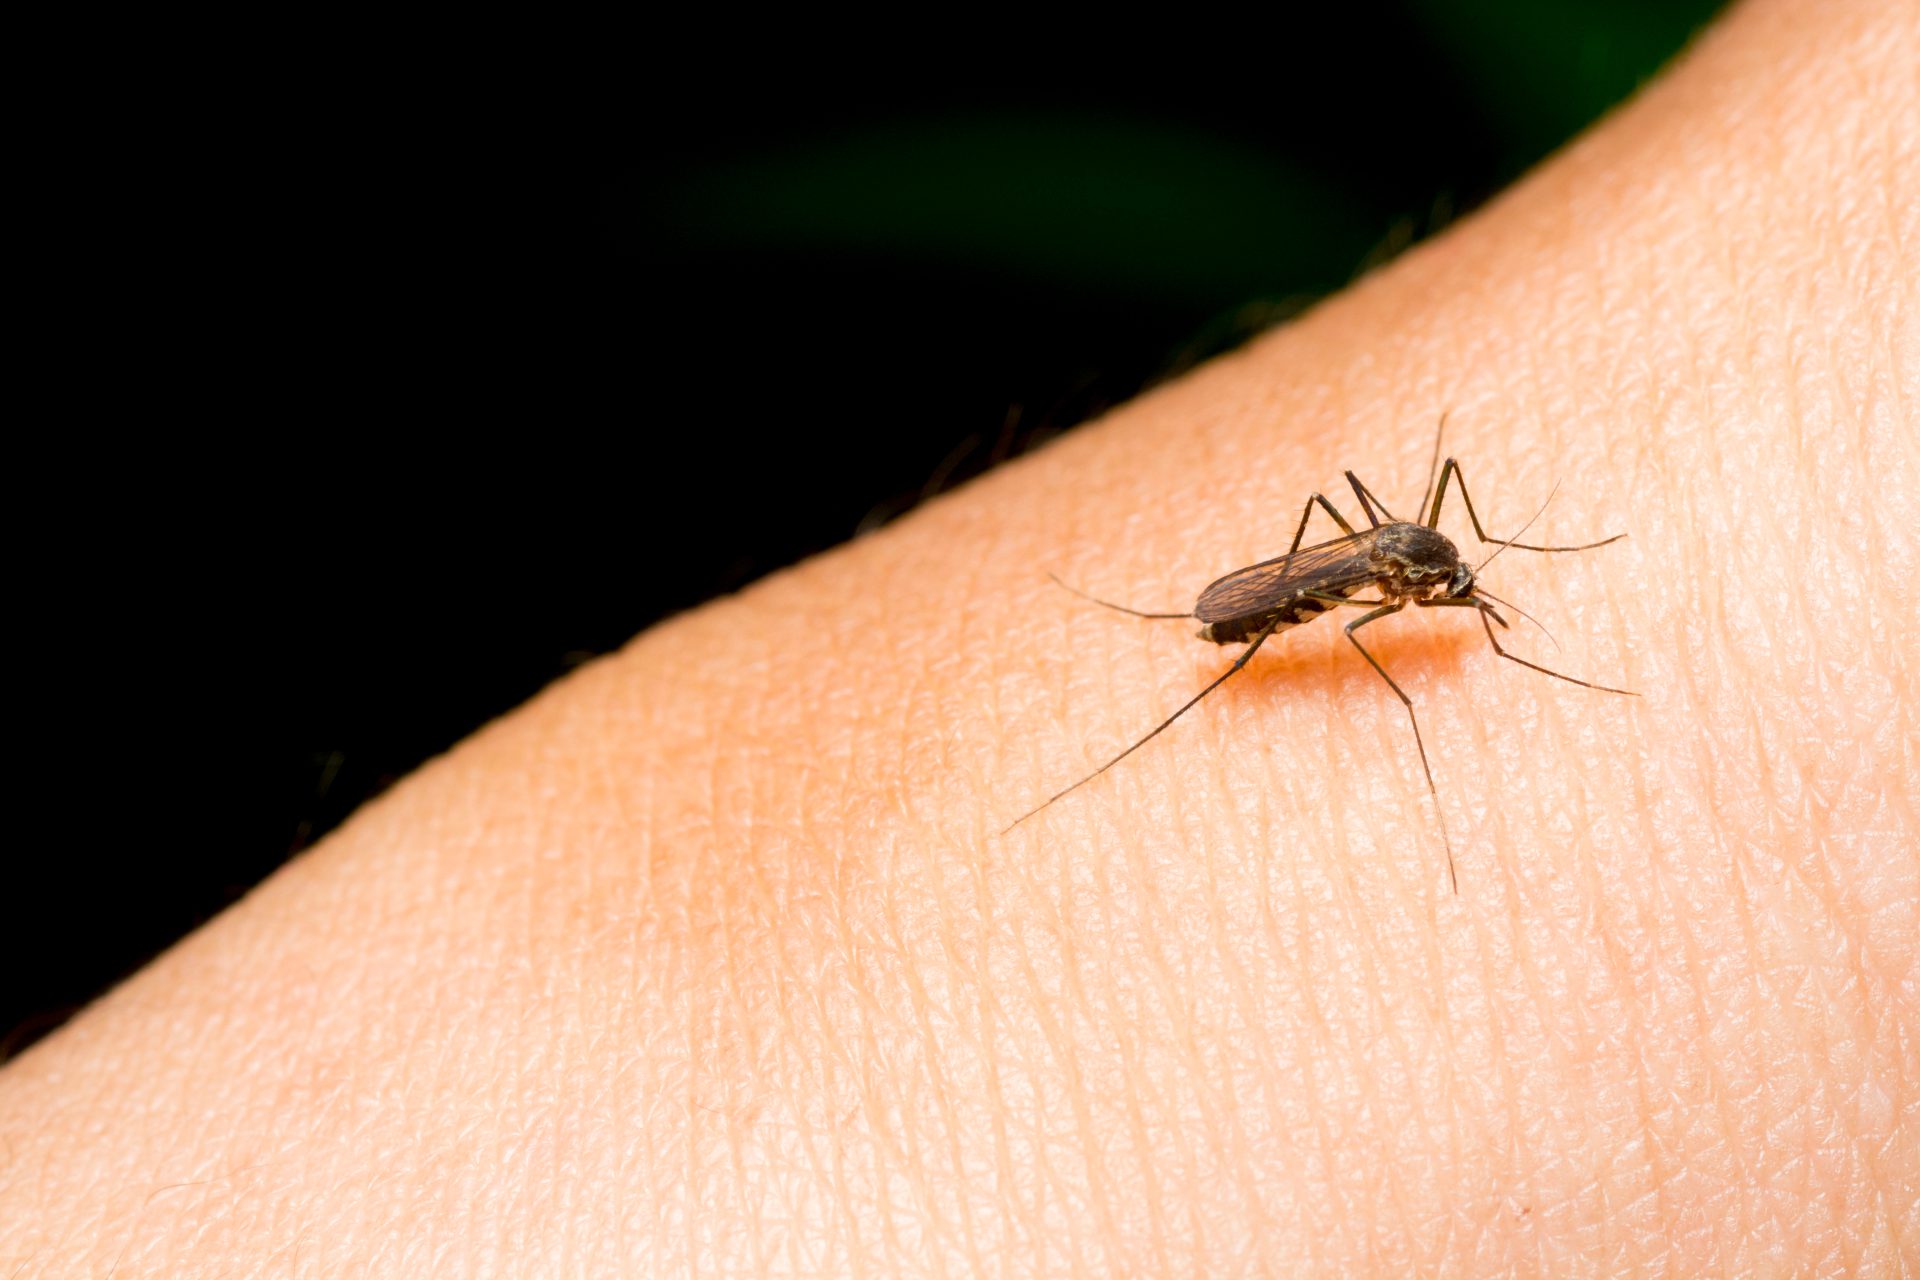 Komary - wektory wielu chorób wywołanych przez wirusy, bakterie, grzyby i pierwotniaki.